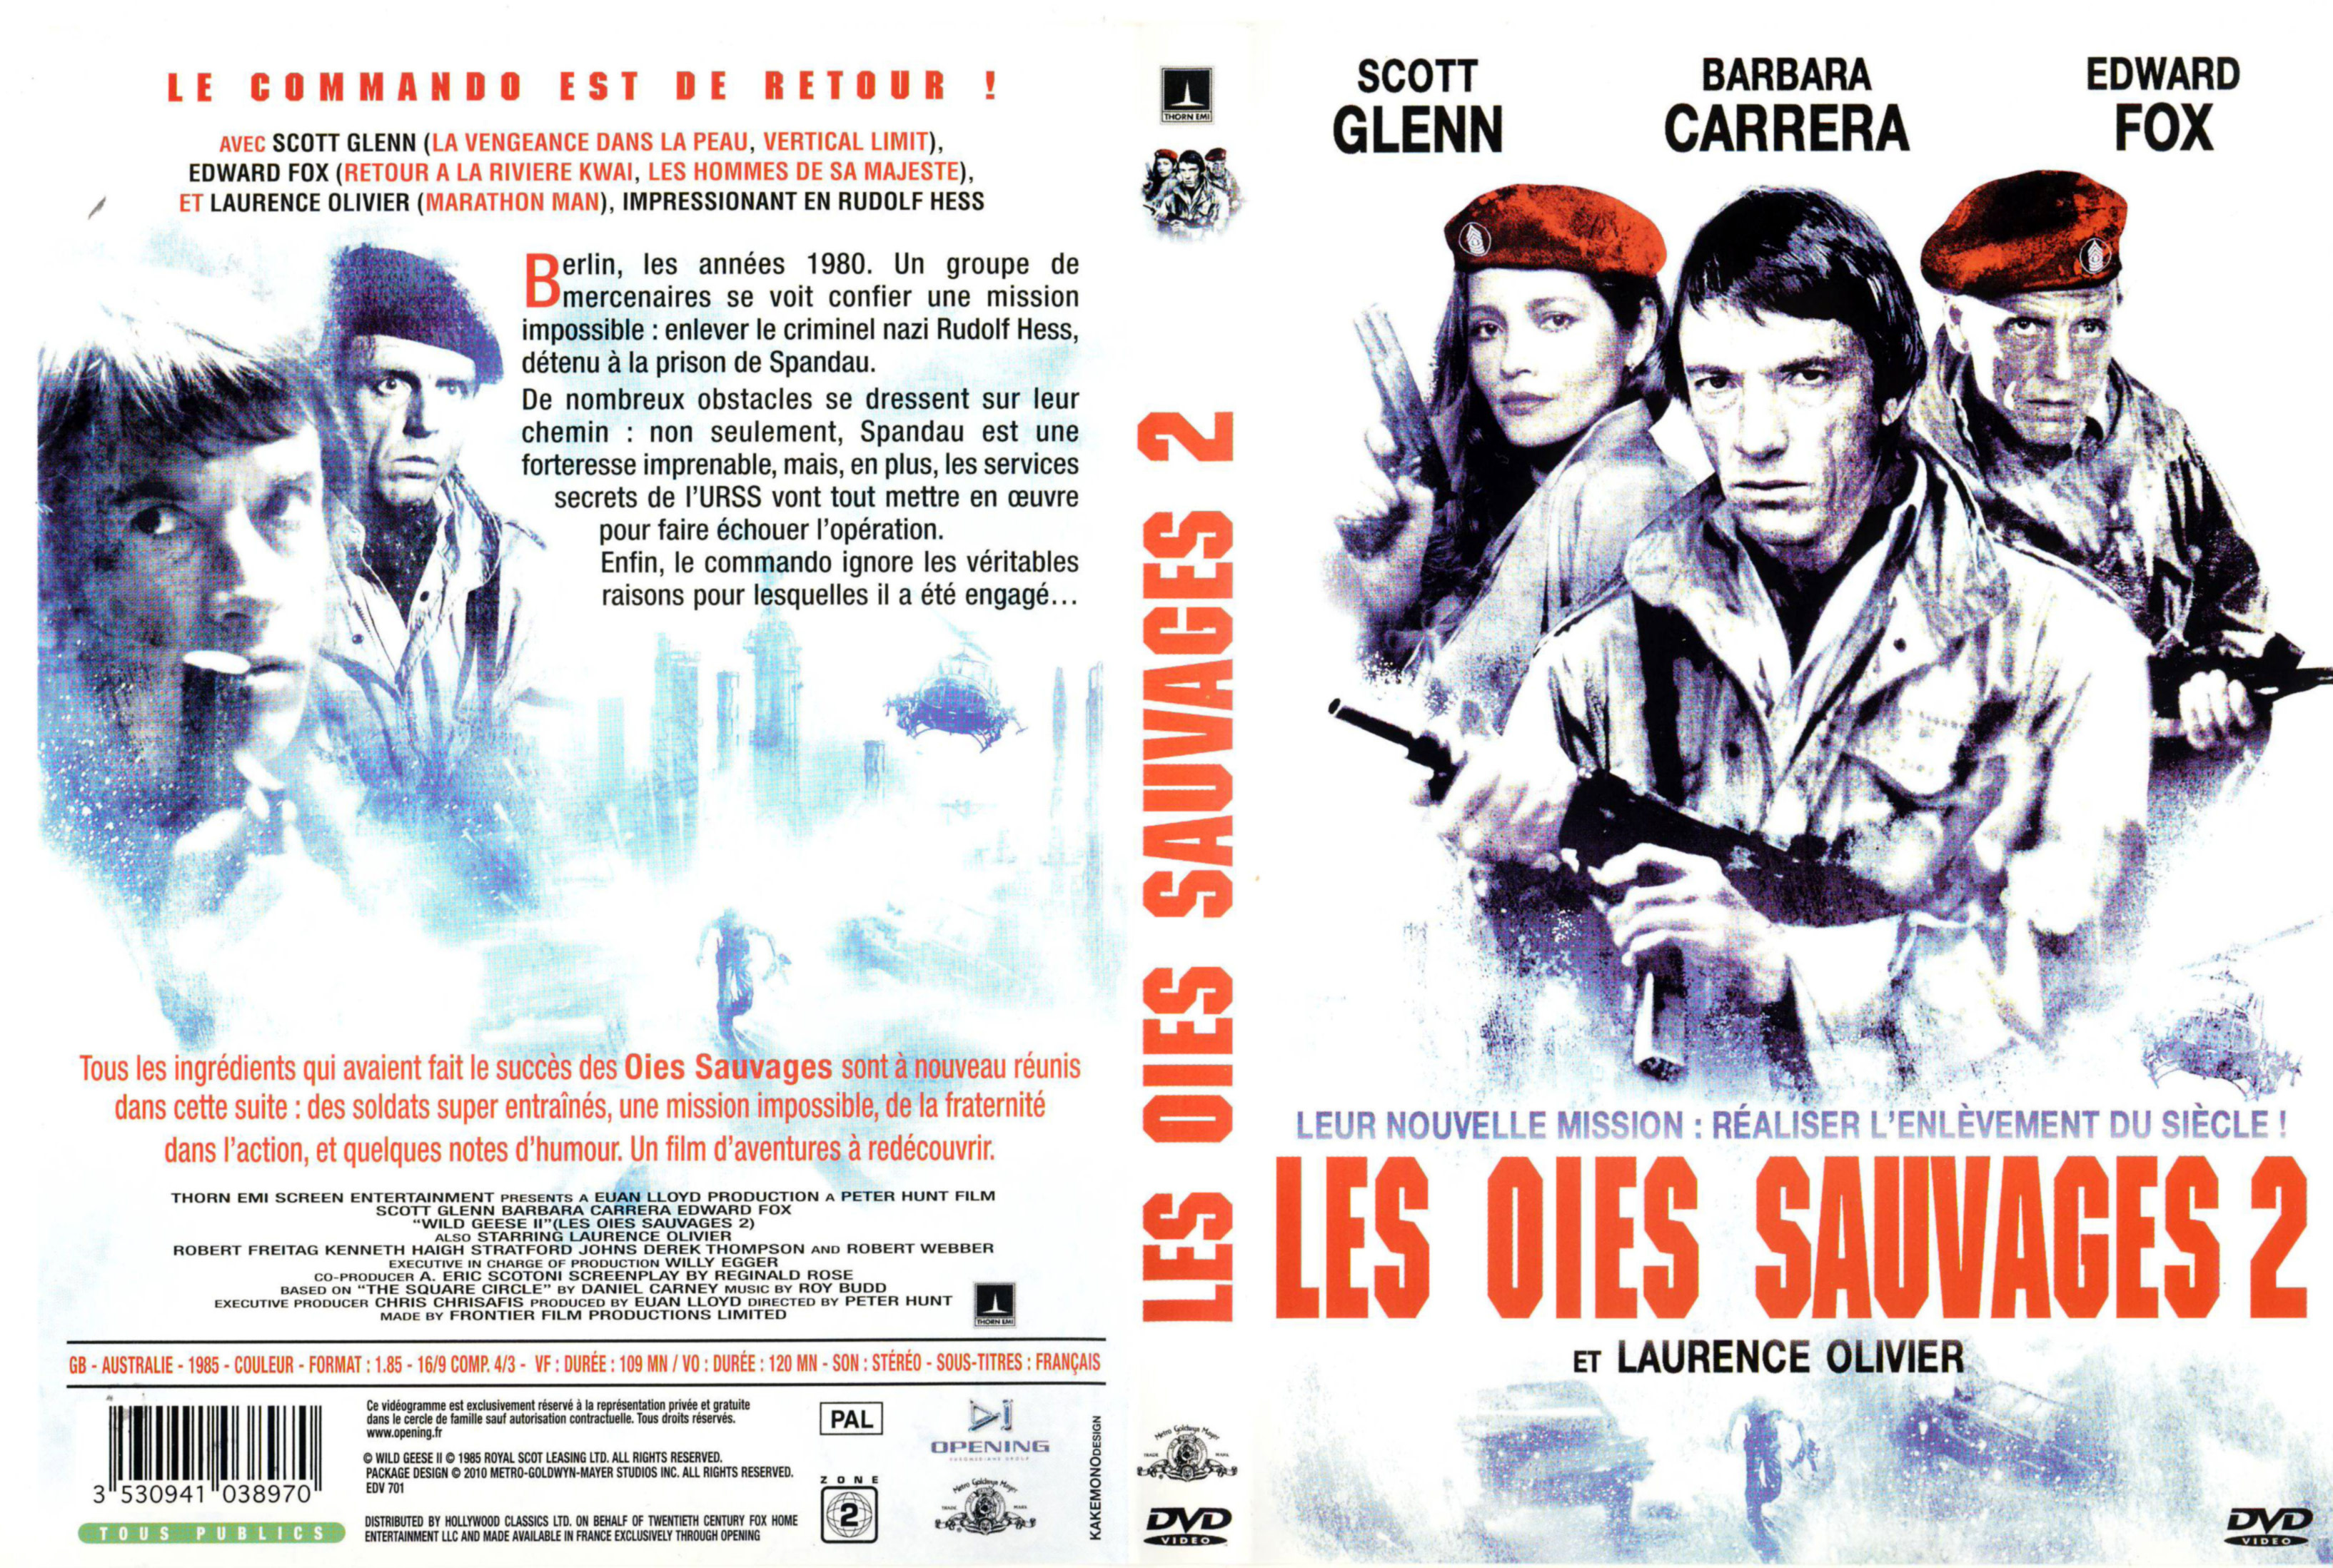 Jaquette DVD Les oies sauvages 2